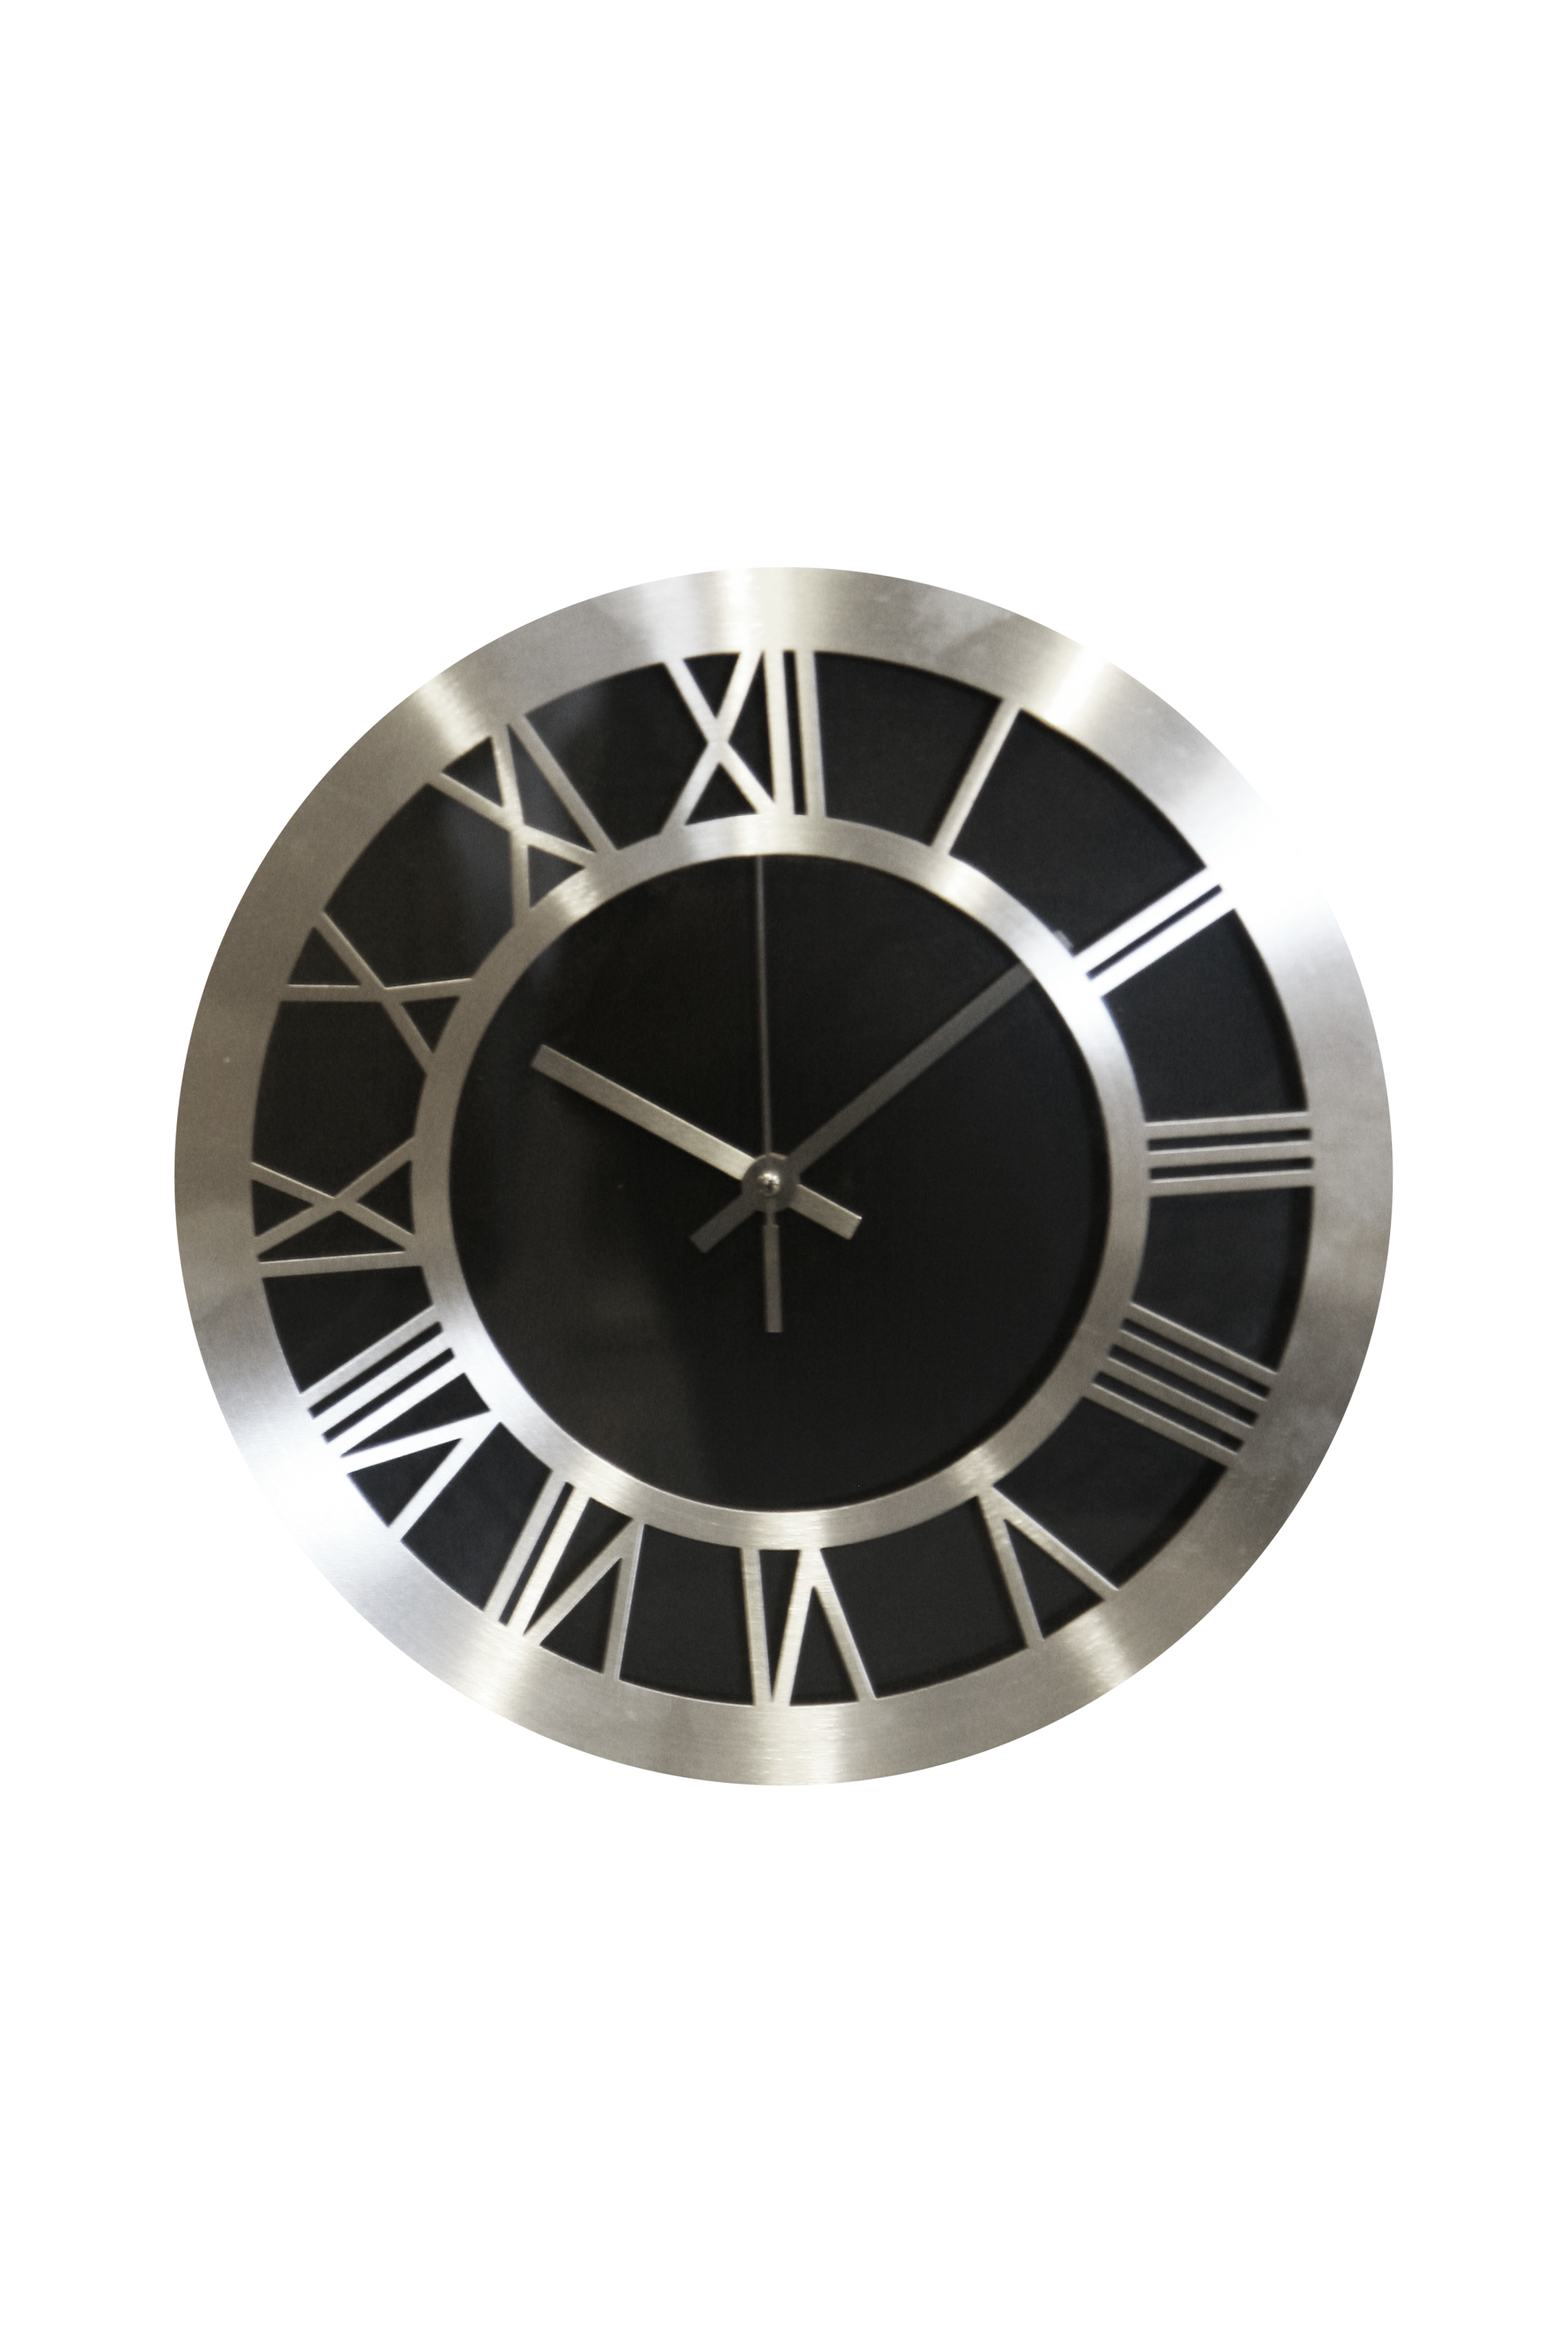 BESK Pulkstenis sienas 30cm, aluminija Sienas pulkstenis